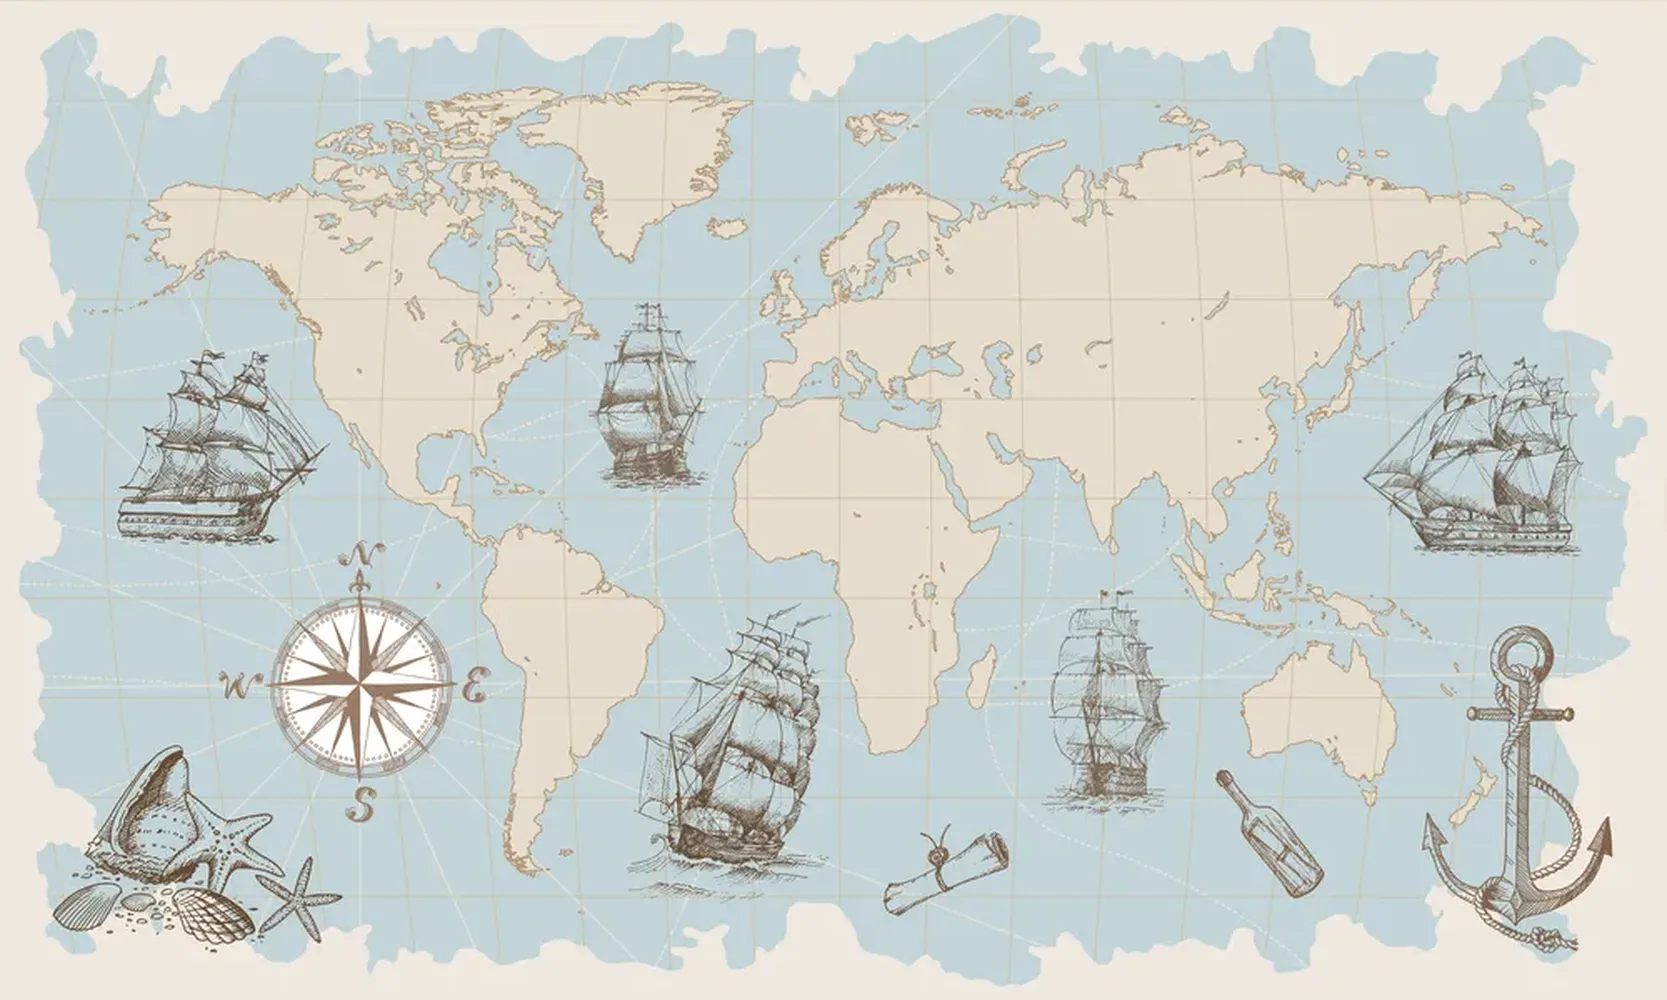 کاغذ دیواری نقشه جهان، لنگر و کشتی های بادبانی